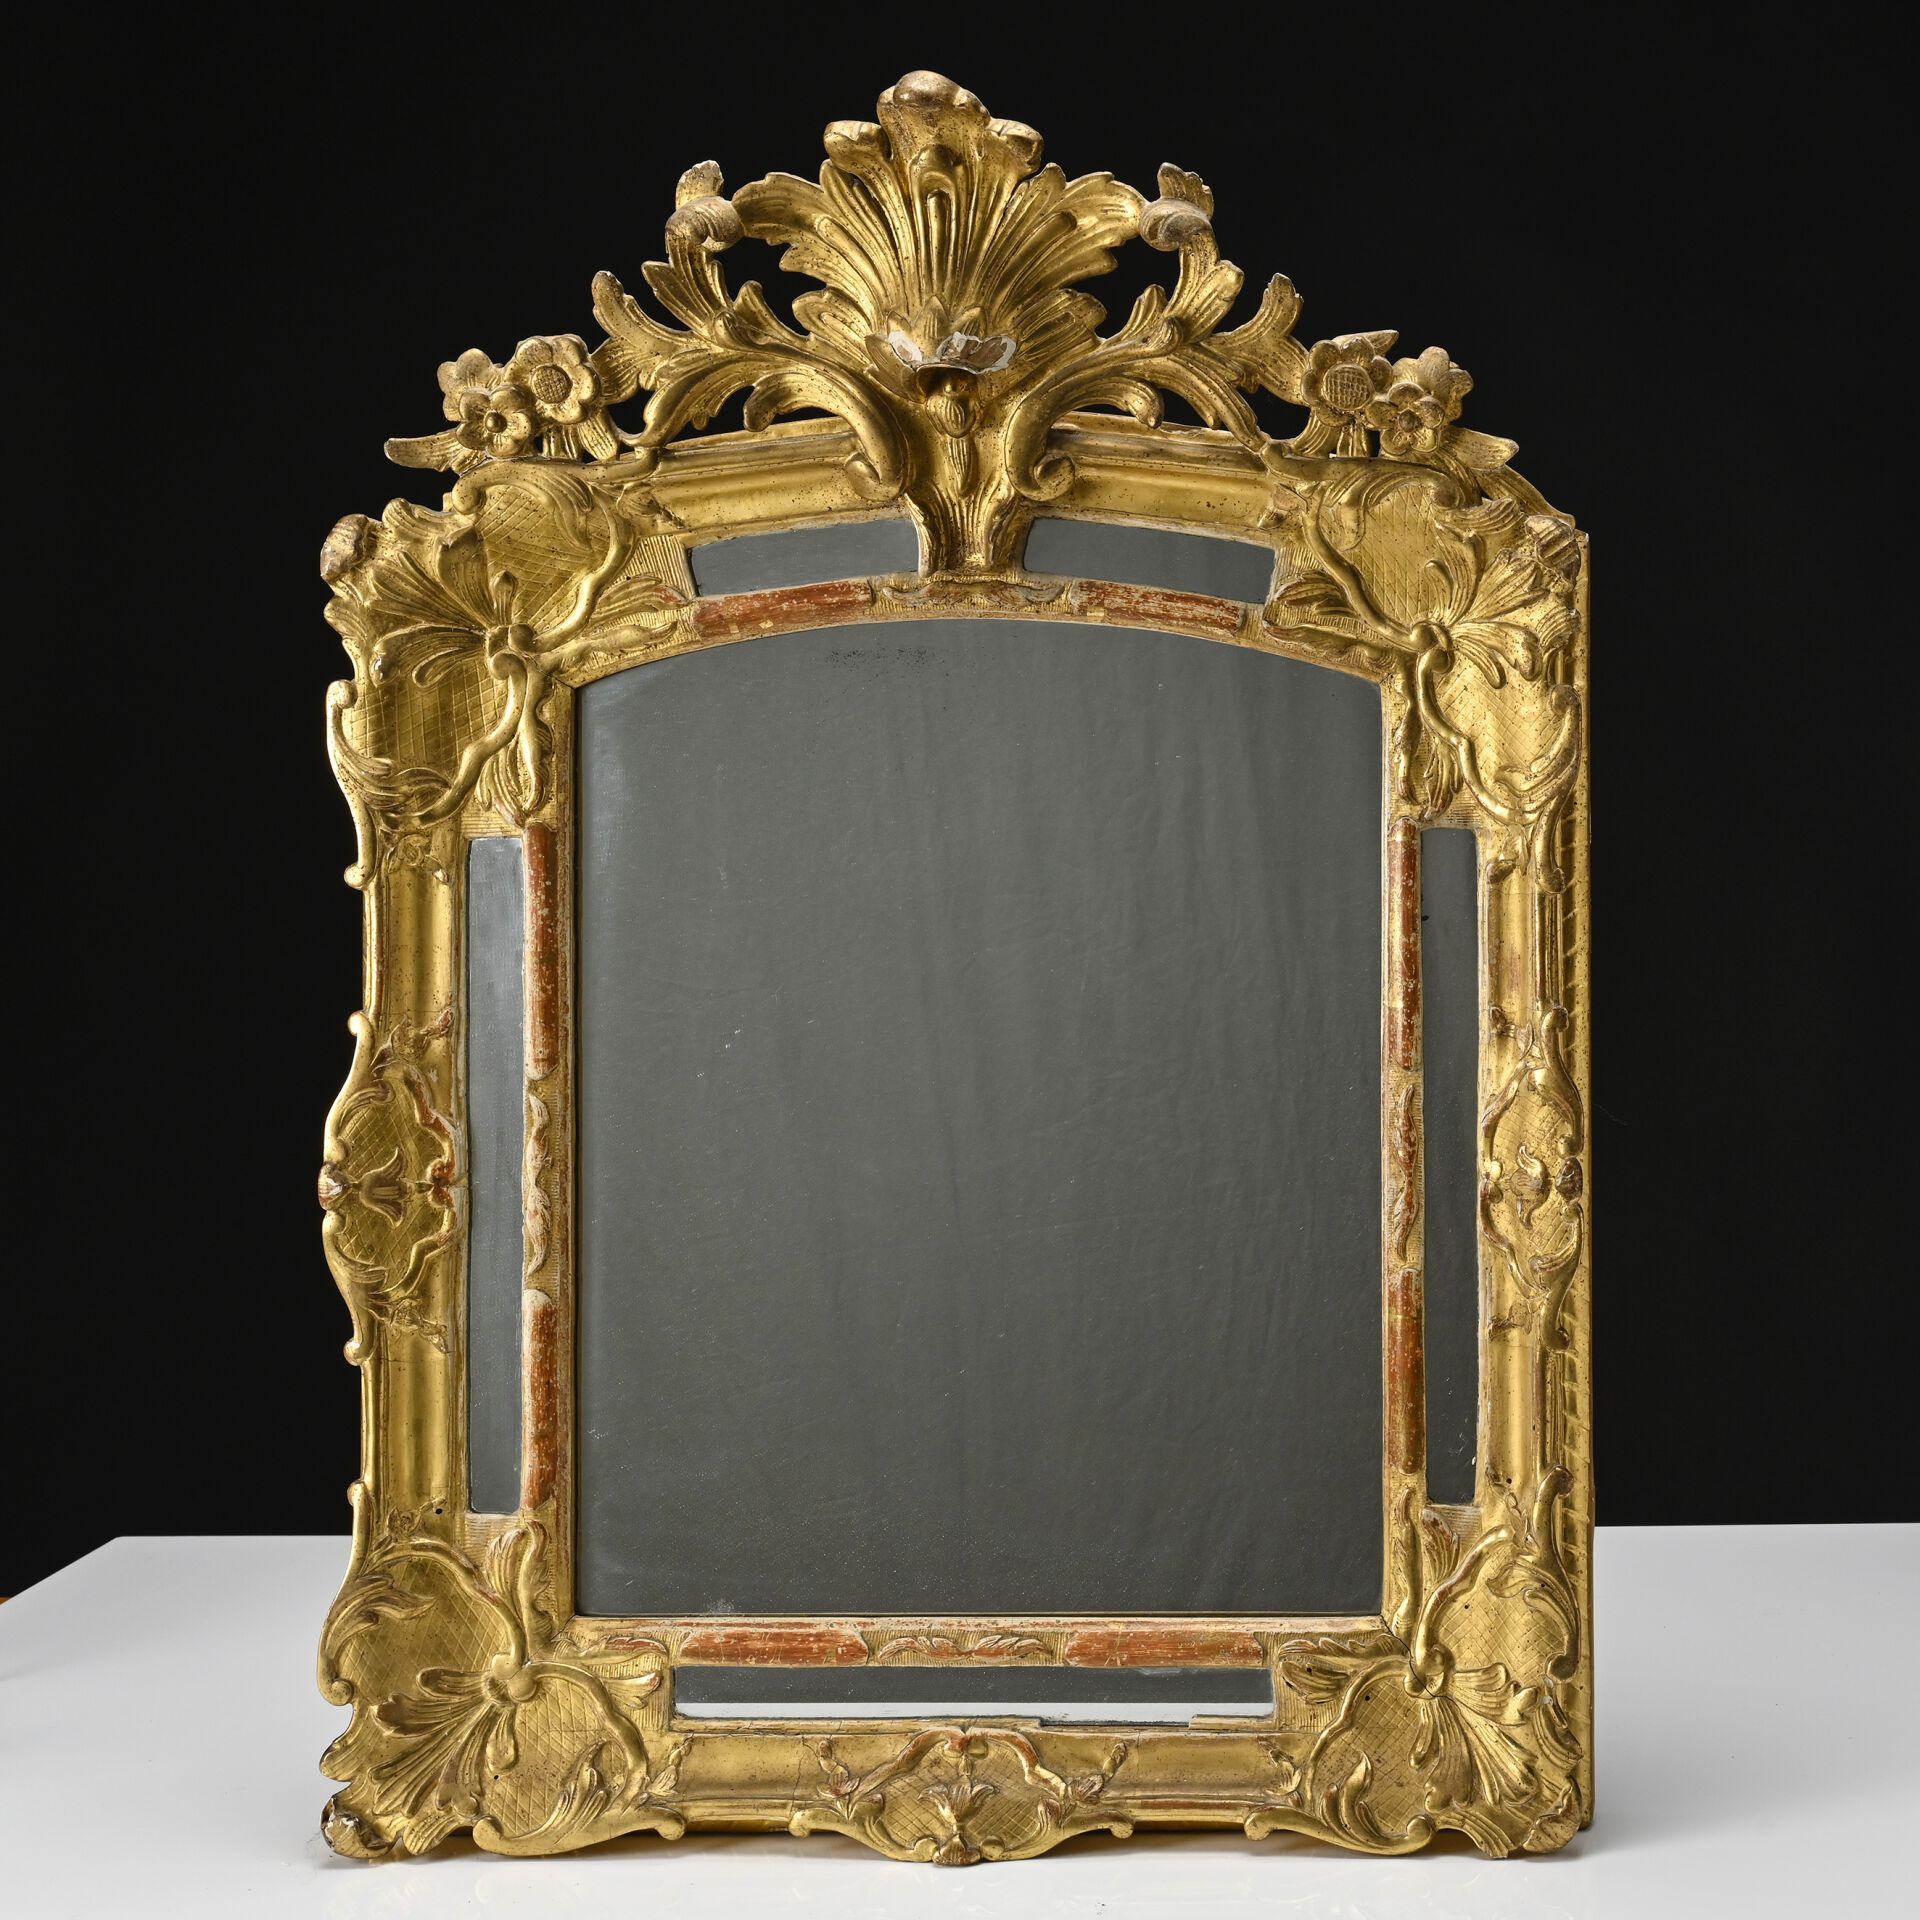 Null Miroir en bois doré sculpté
Epoque Louis XV
85 x 60 cm
(glace moderne, peti&hellip;